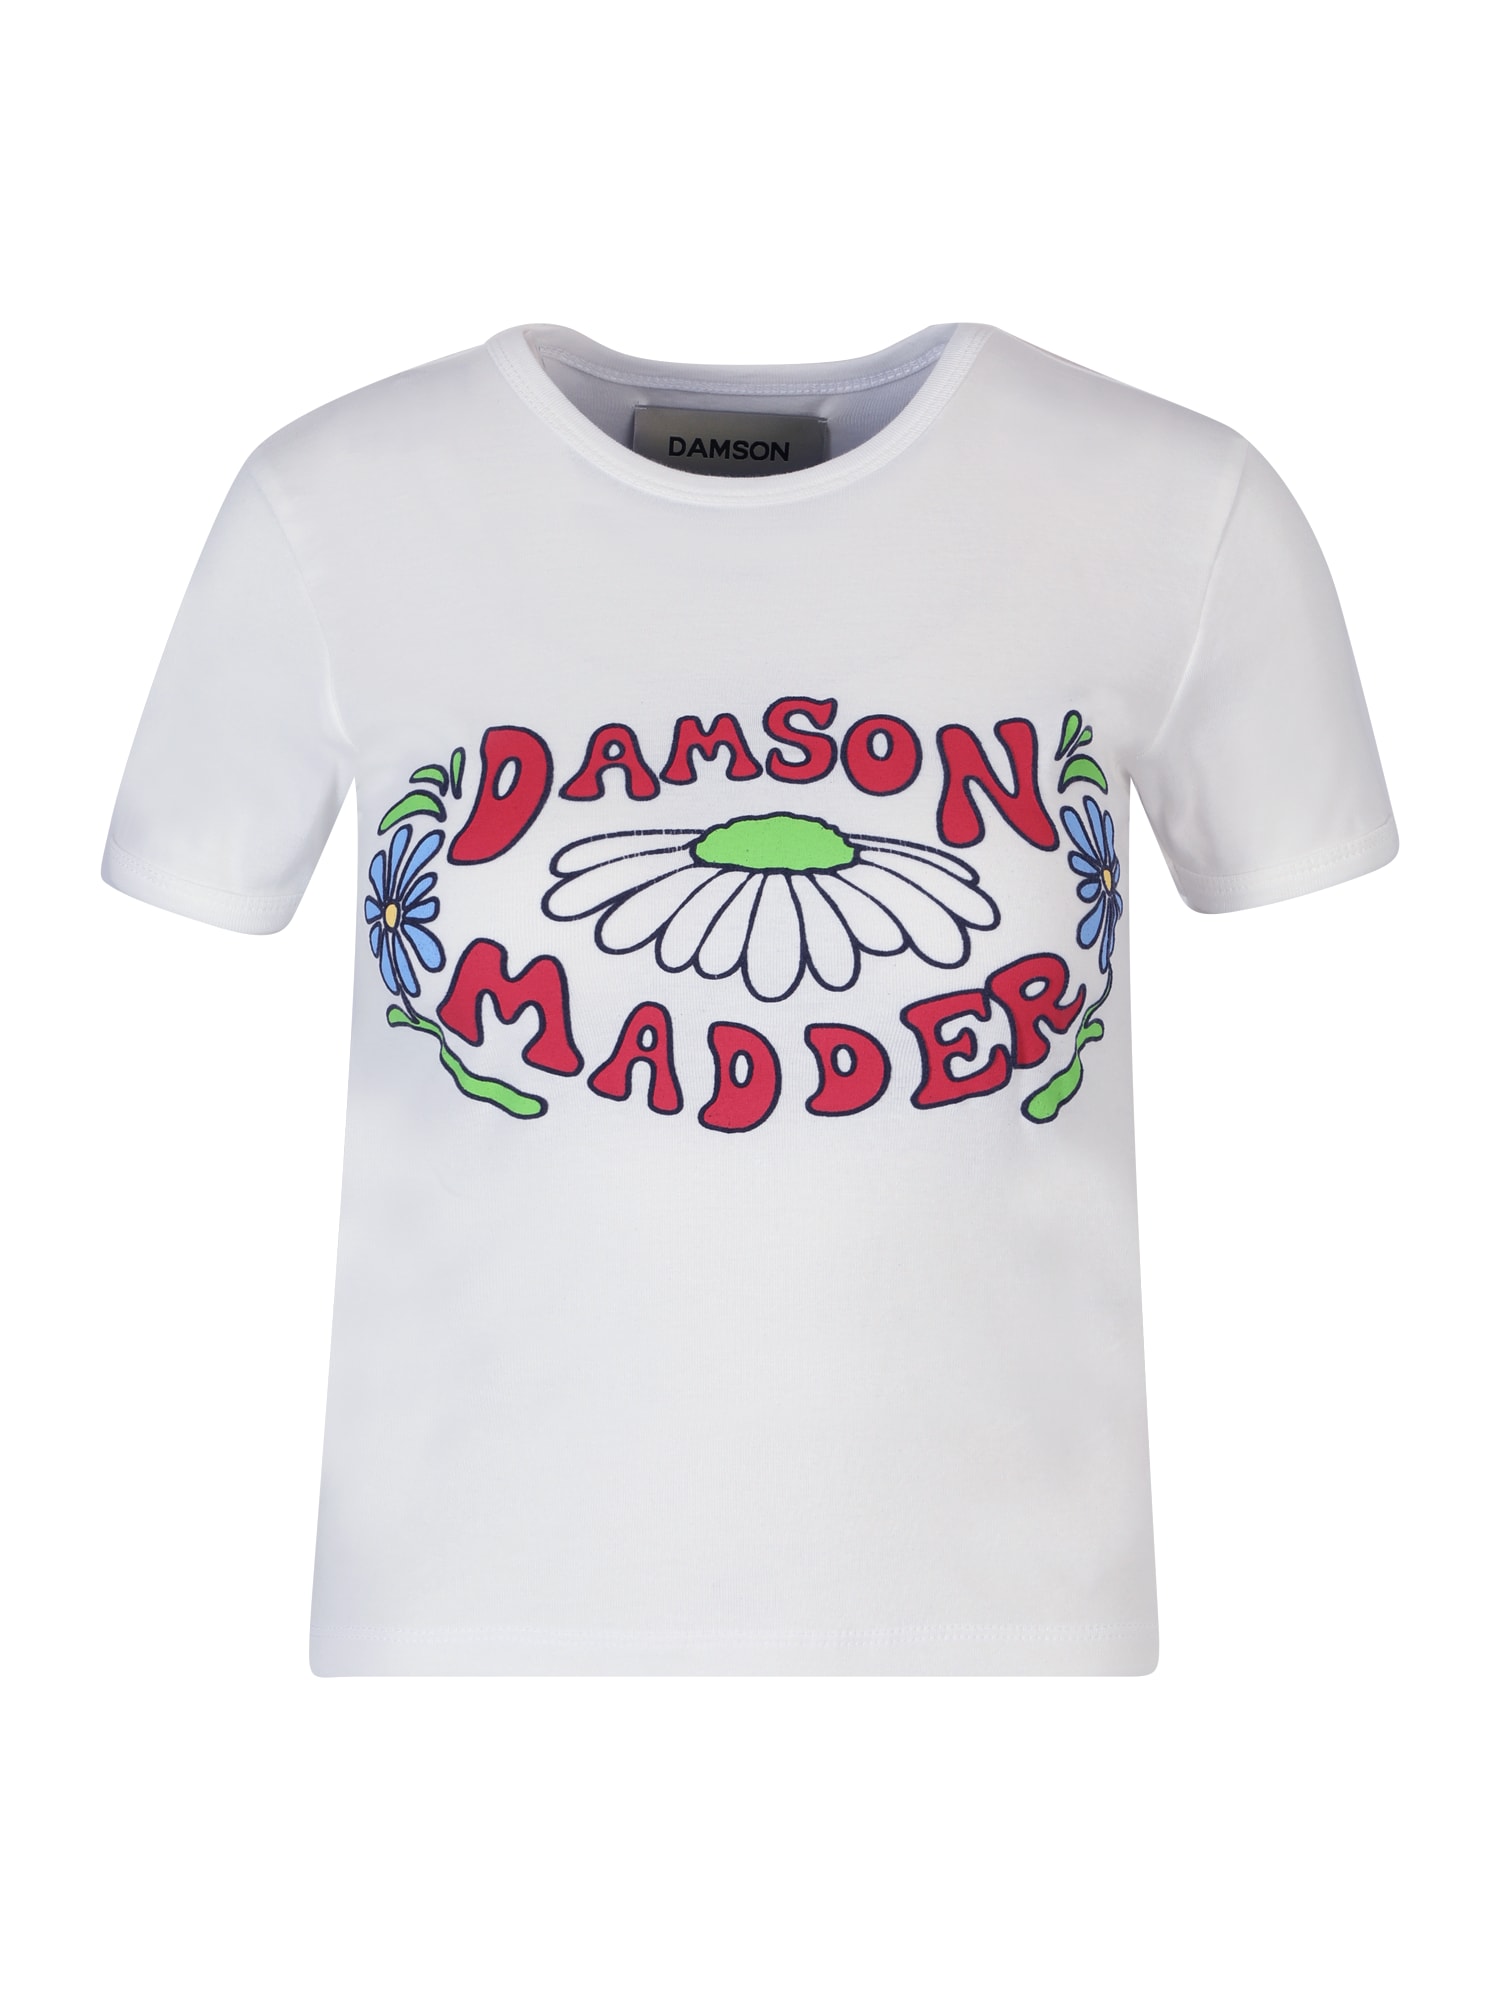 Damson Madder Póló  fehér / fekete / világoszöld / piros / világoskék